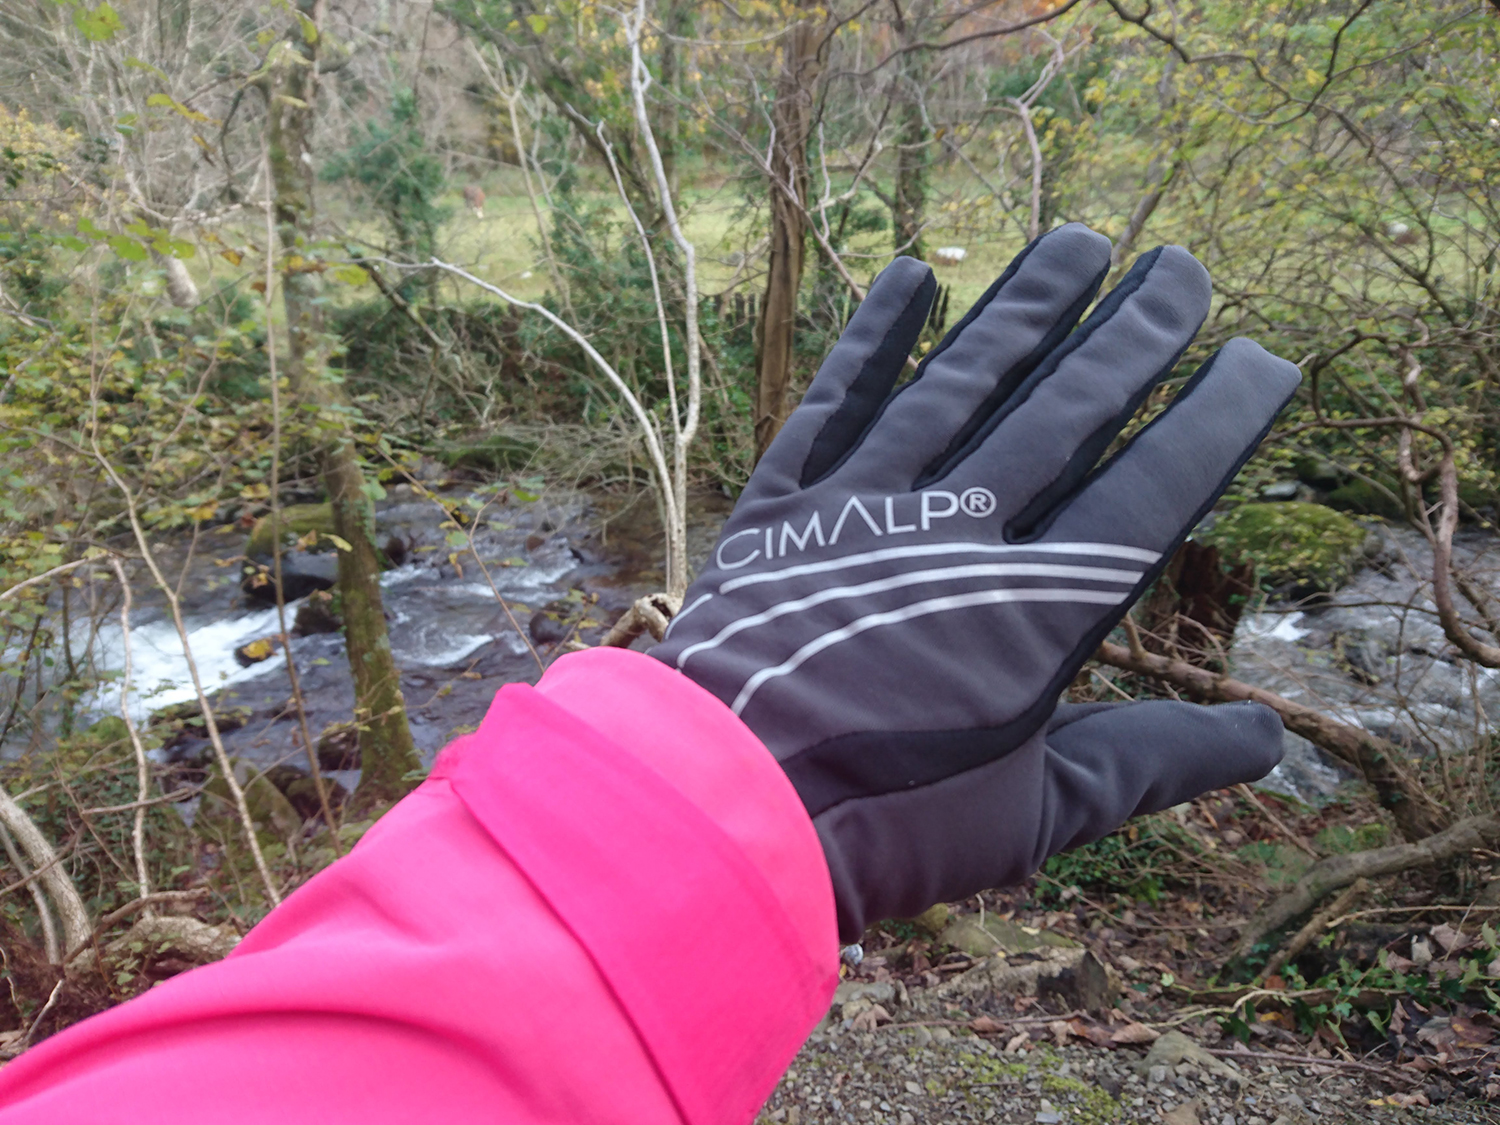 CimAlp ladies gloves